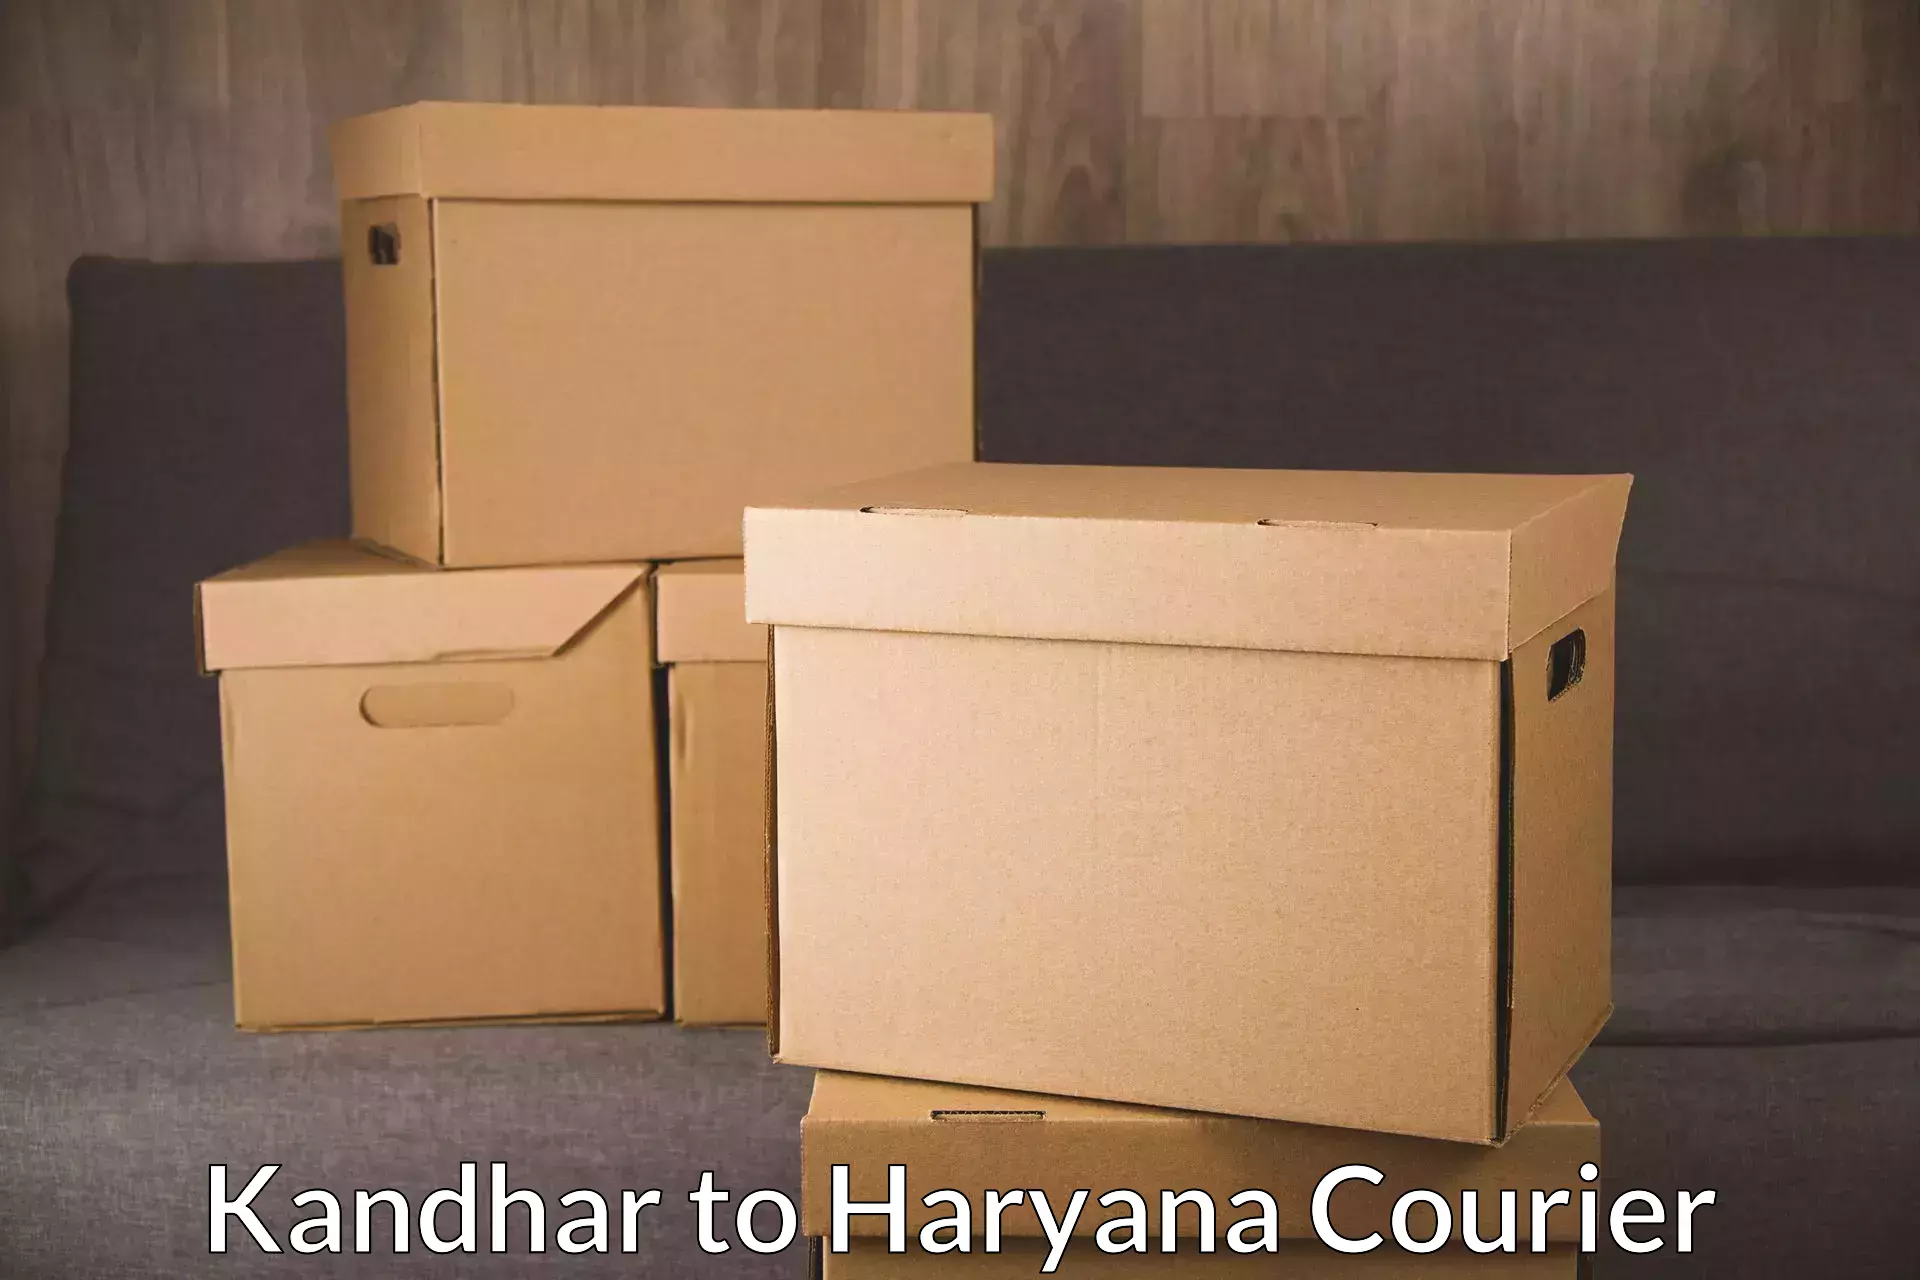 Enhanced tracking features Kandhar to Gurugram